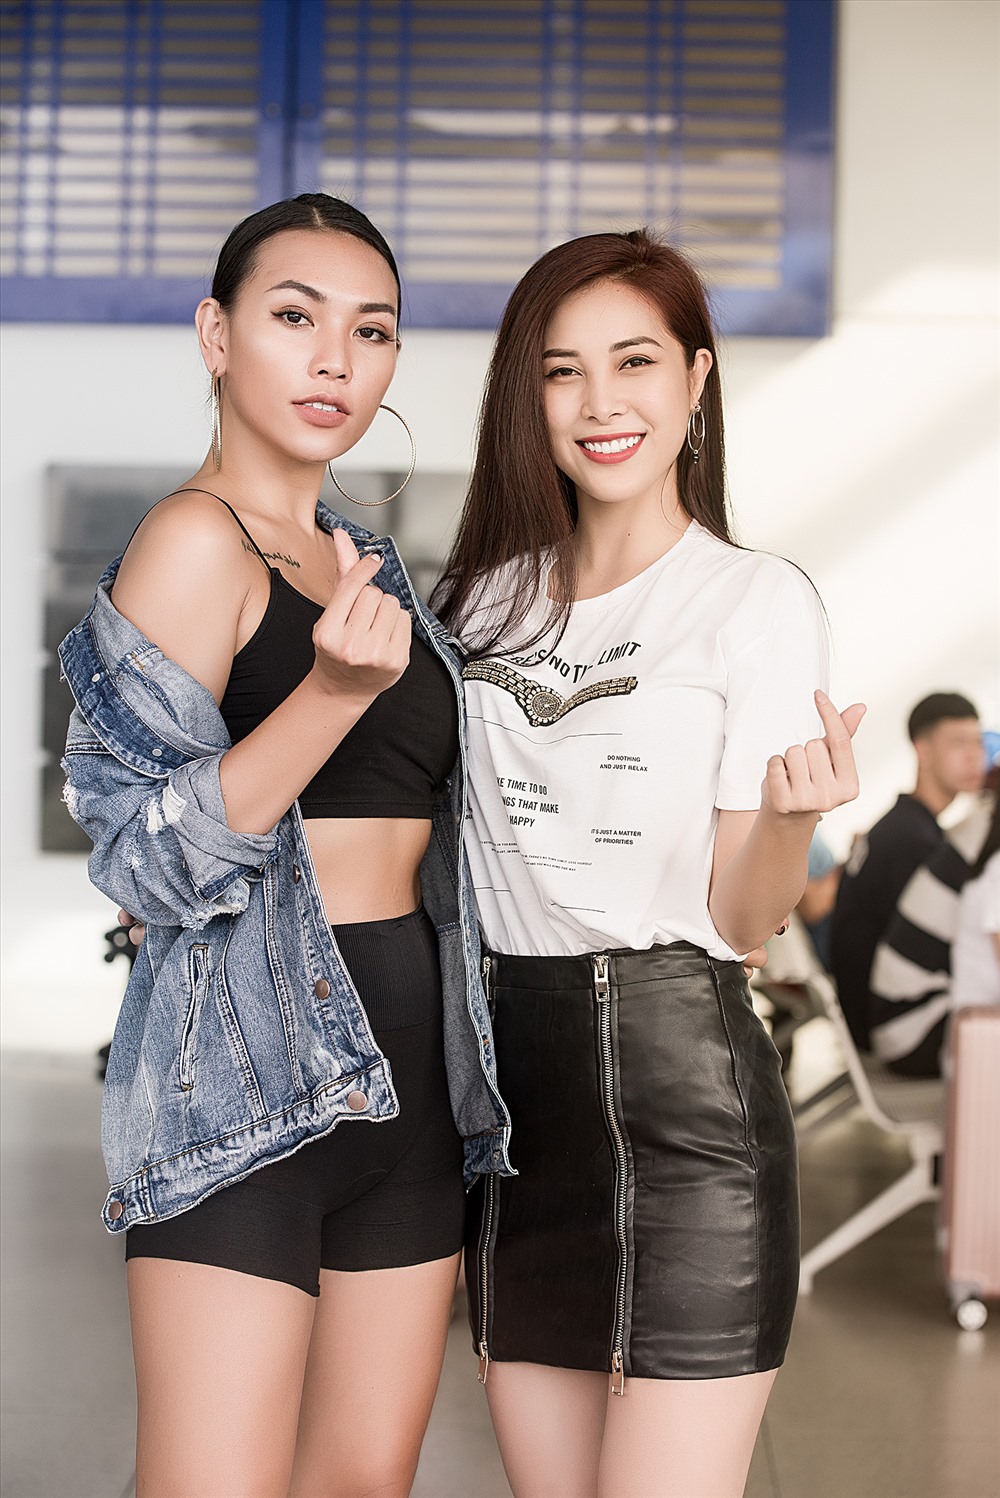 Diệu Huyền là một cái tên cá tính trong làng người mẫu và có vị trí khi giành giải bạc Siêu mẫu Việt Nam 2012.